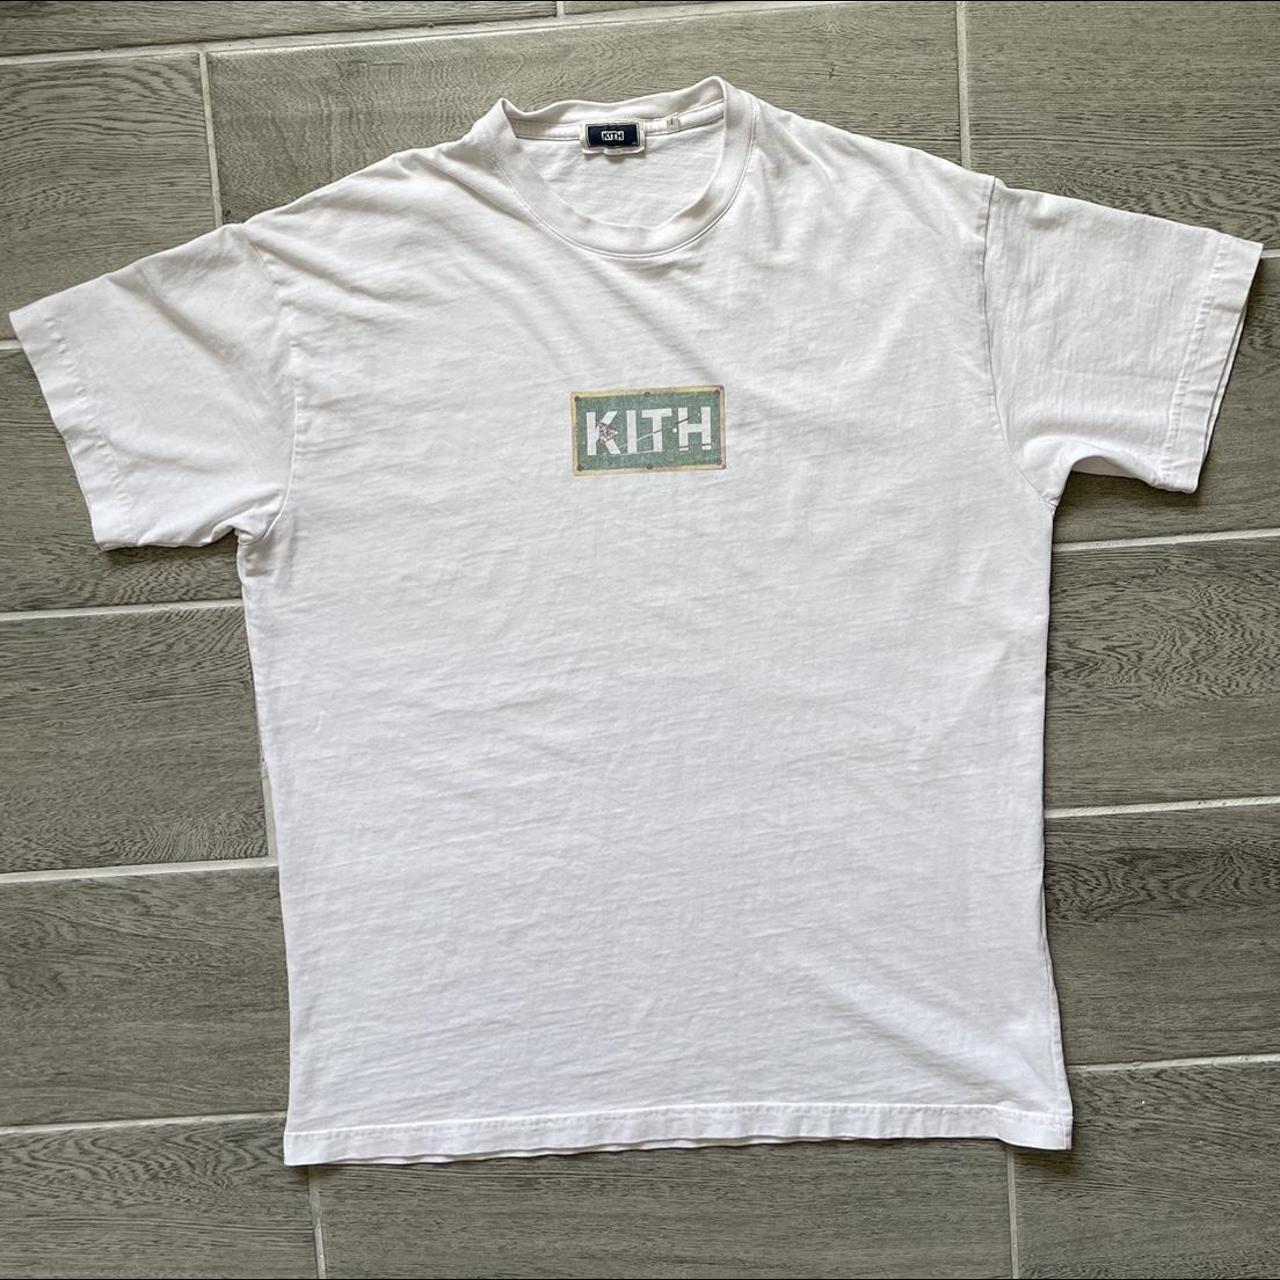 Kith Men's White T-shirt | Depop